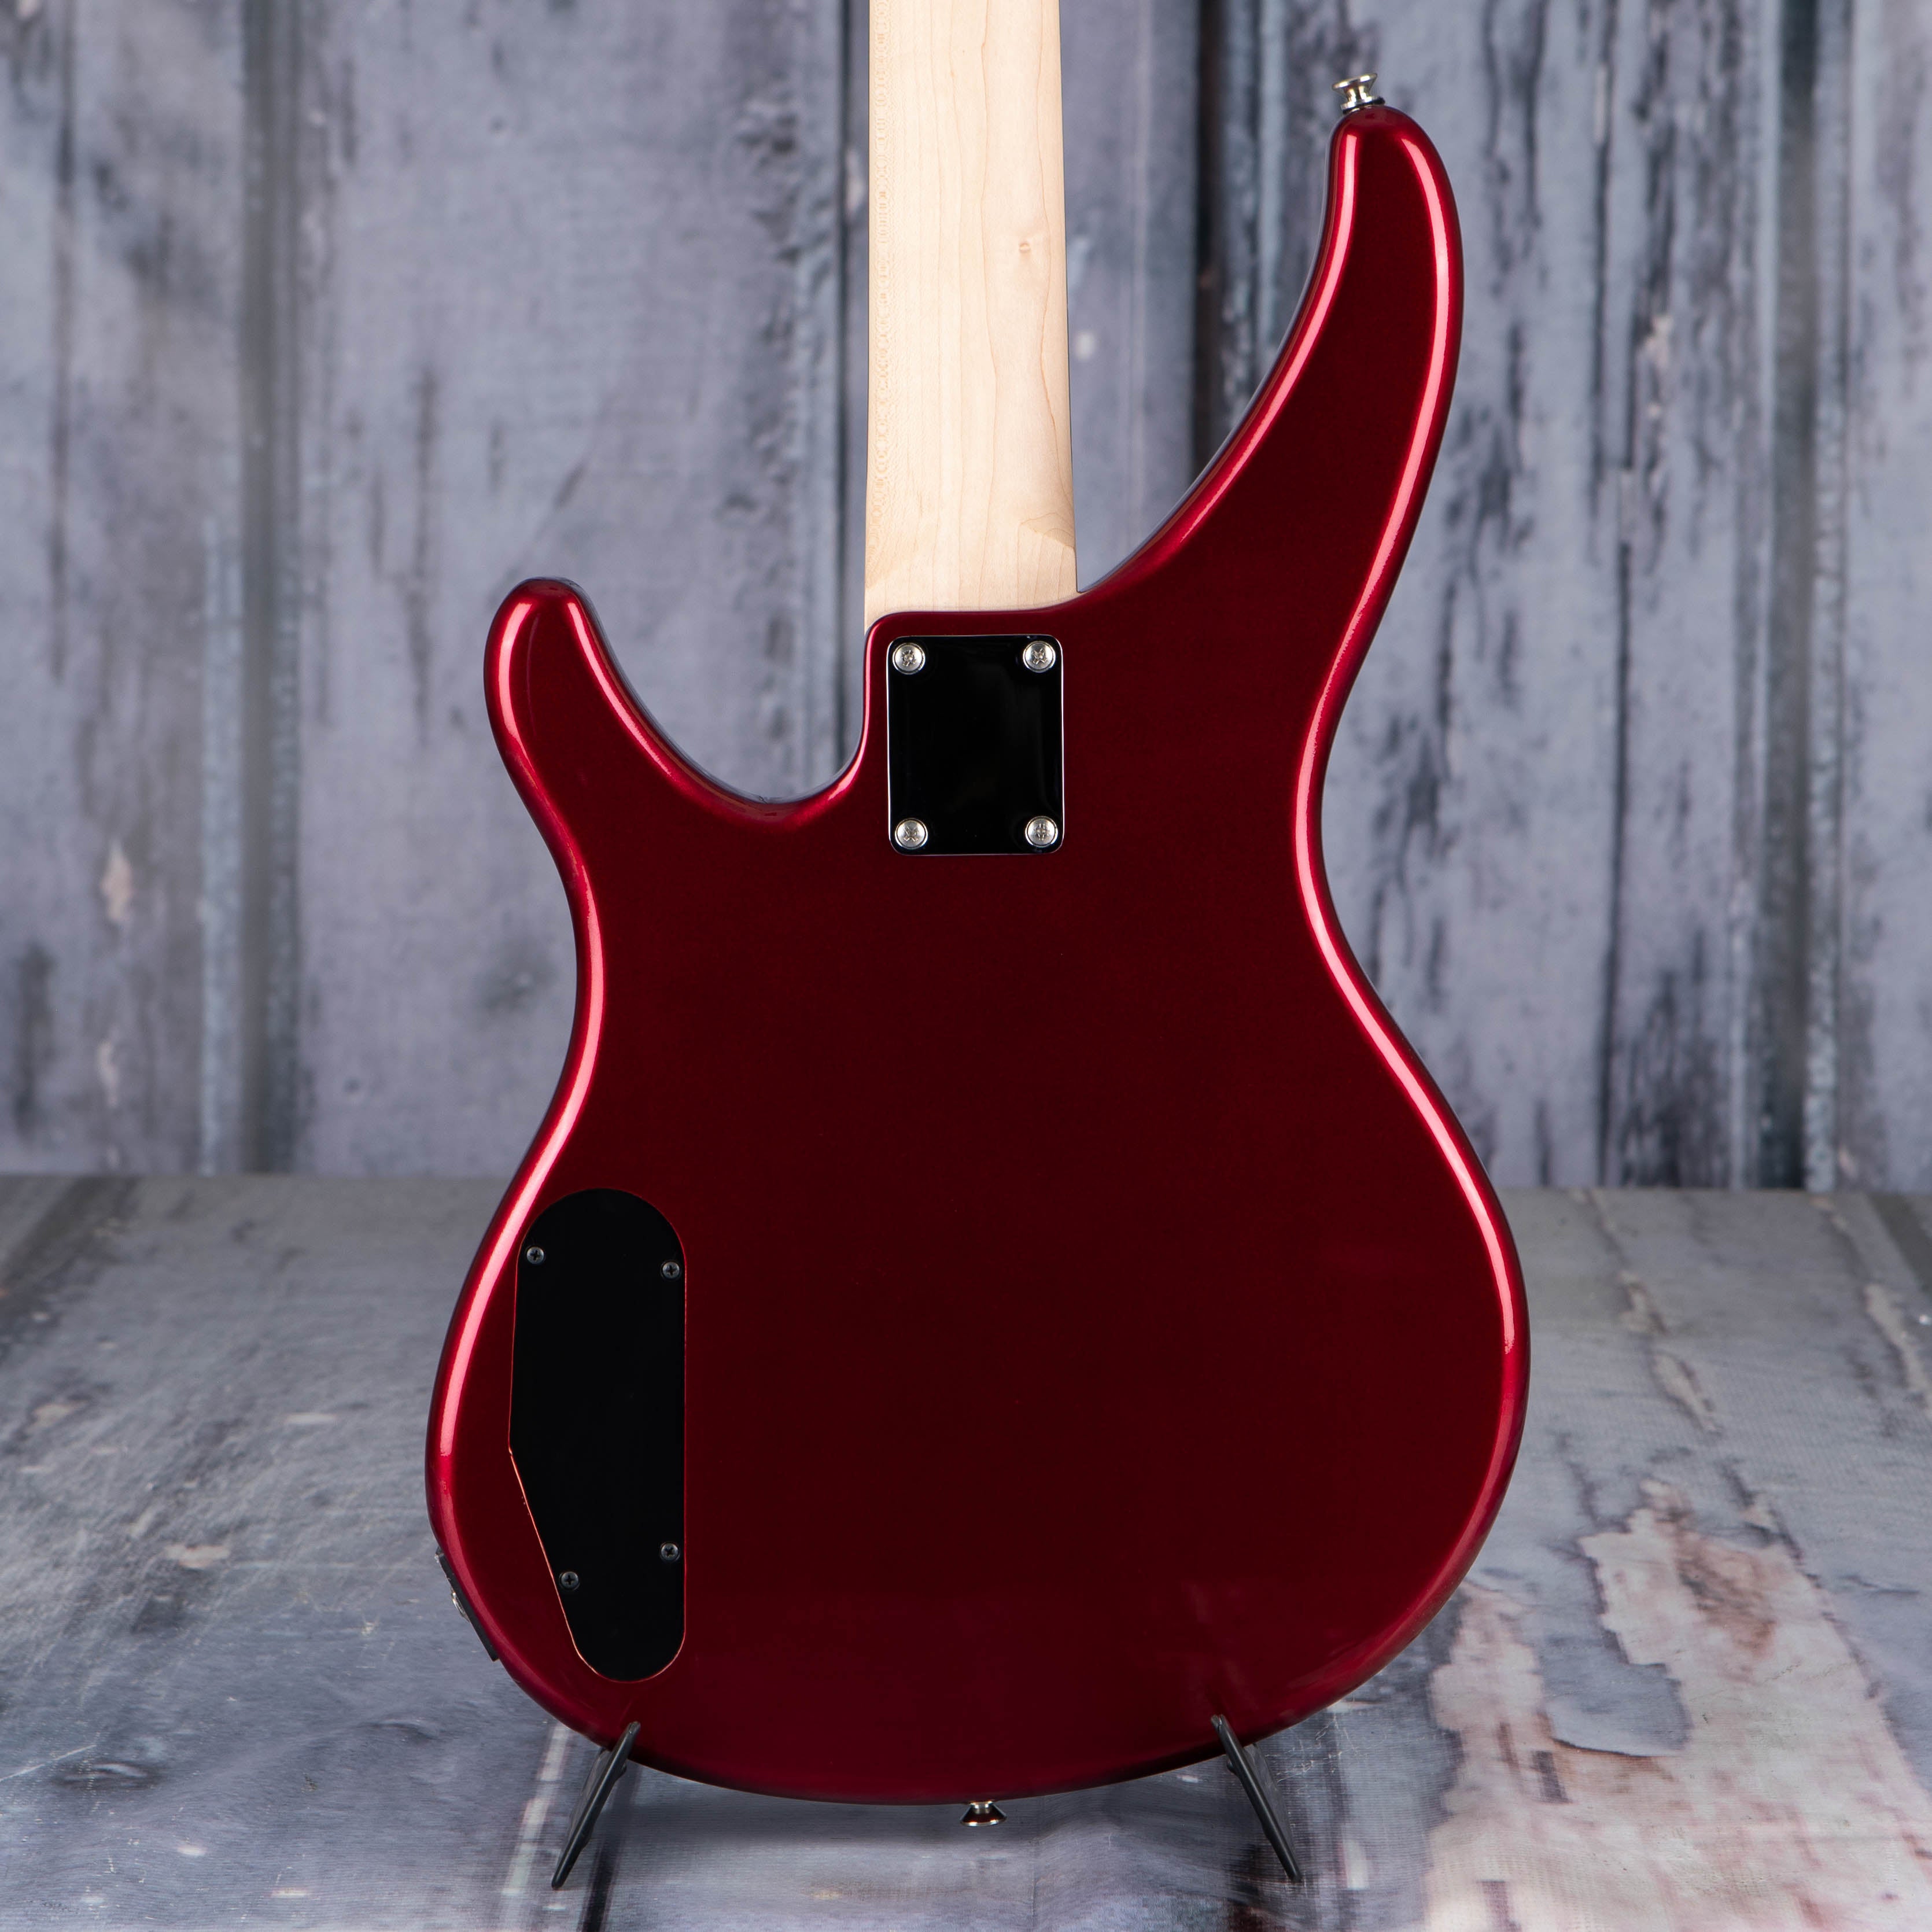 Yamaha TRBX174 Electric Bass Guitar, Metallic Red, back closeup